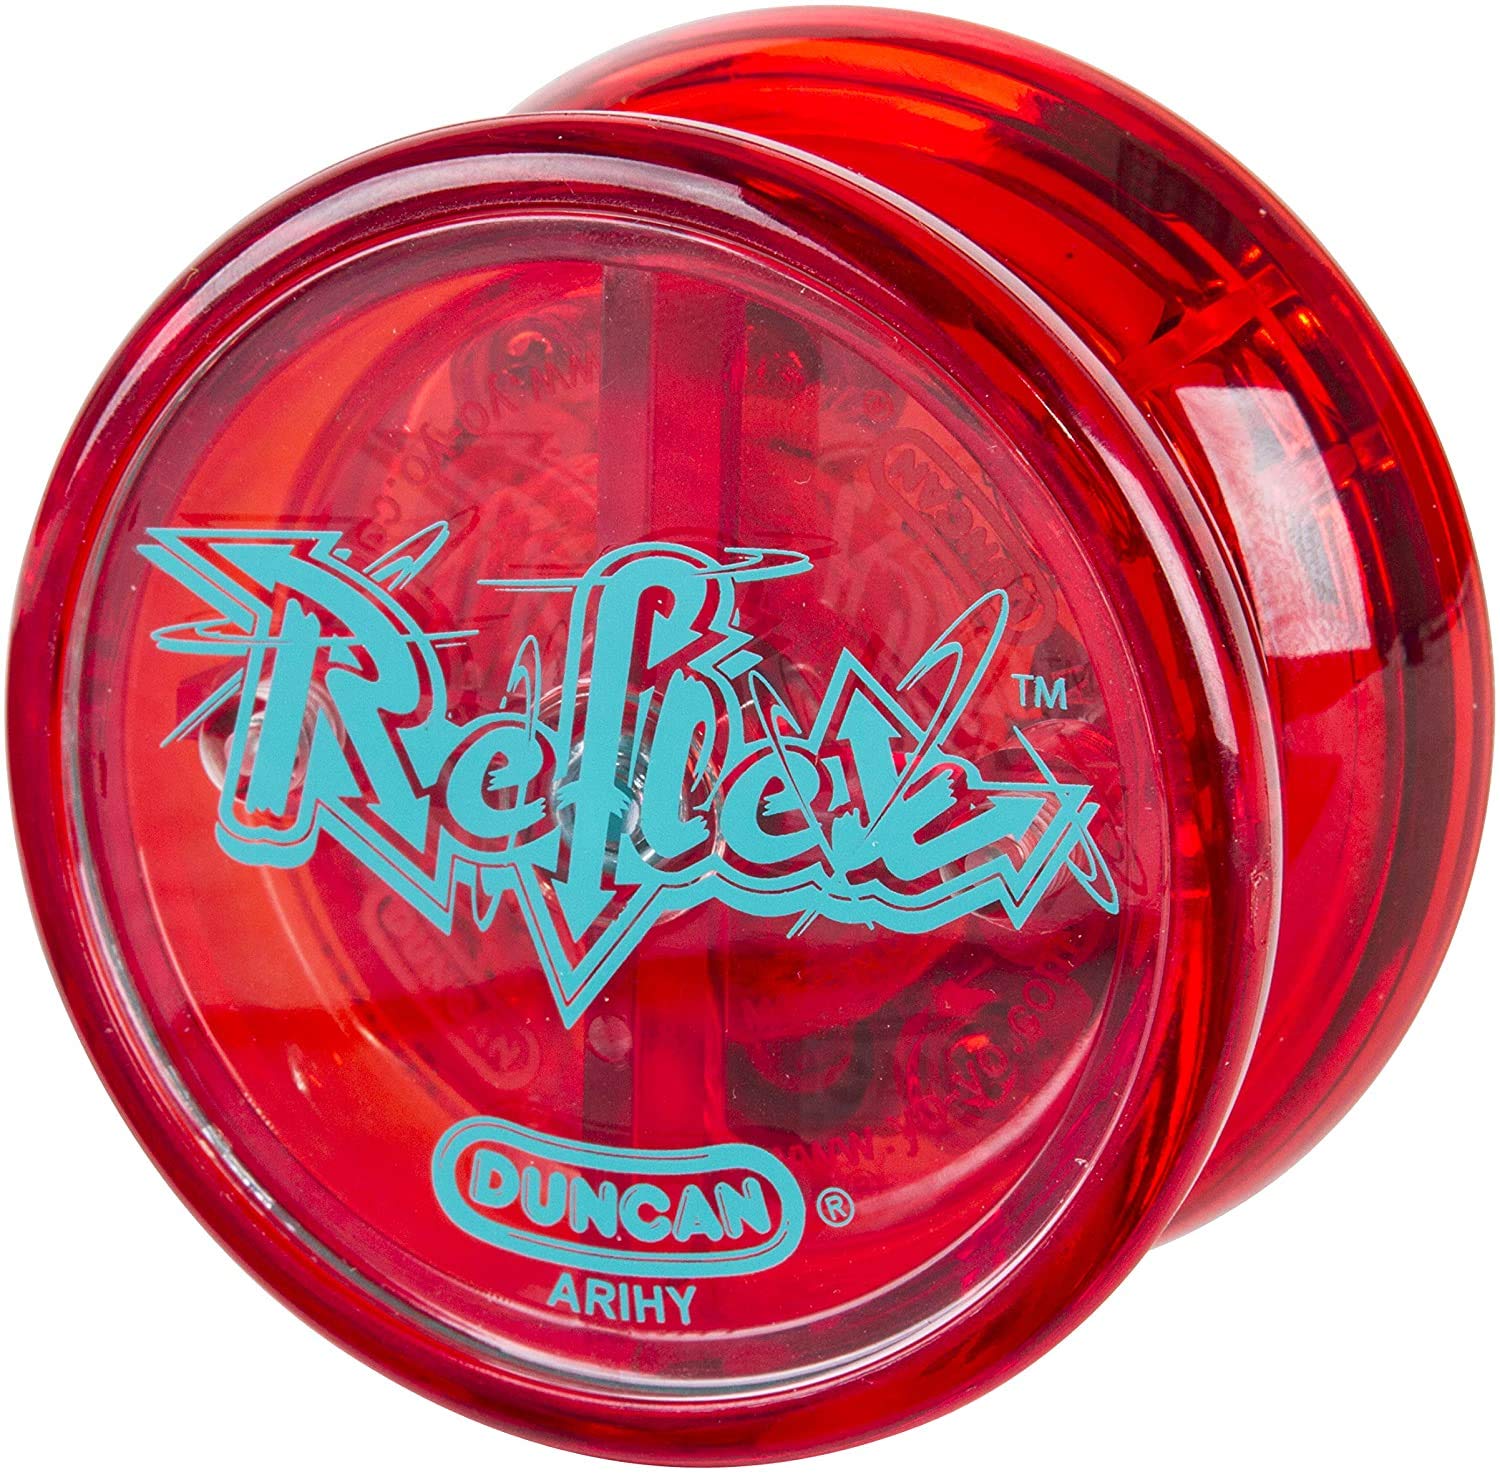 Duncan Toys Reflex Auto Return Yo-Yo, Beginner String Trick Yo-Yo, Red